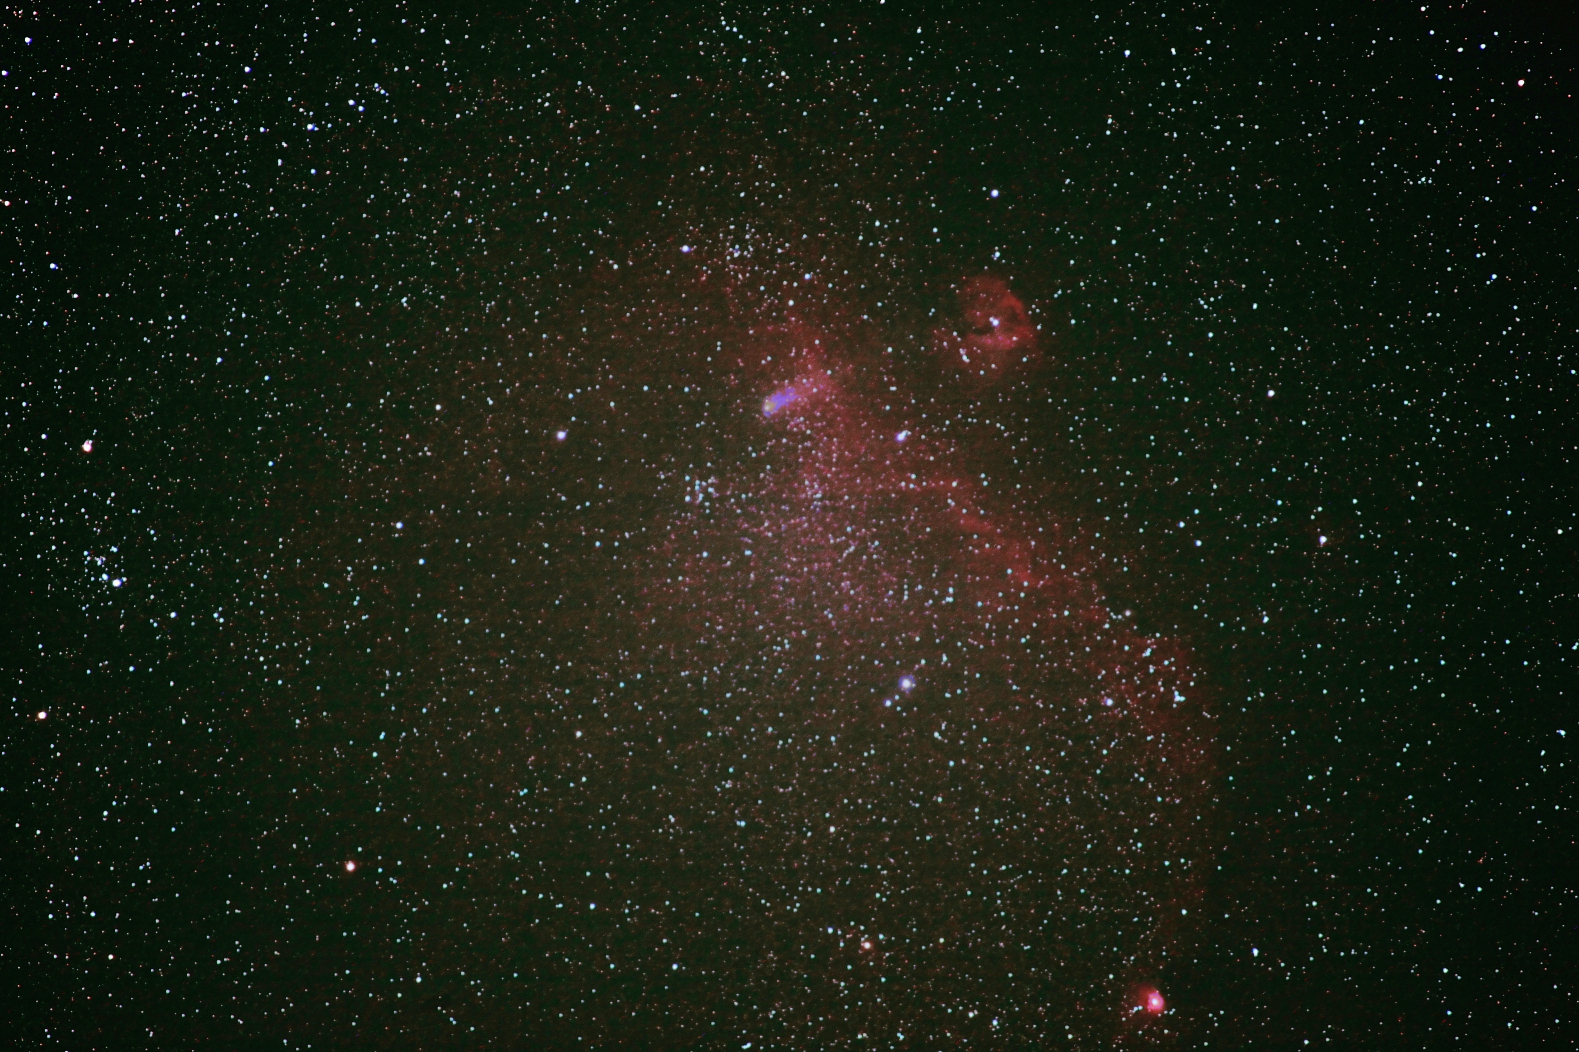 カモメ星雲を通過するジャコビニ・ジンナー彗星(21P)  300mm     2018.10.10